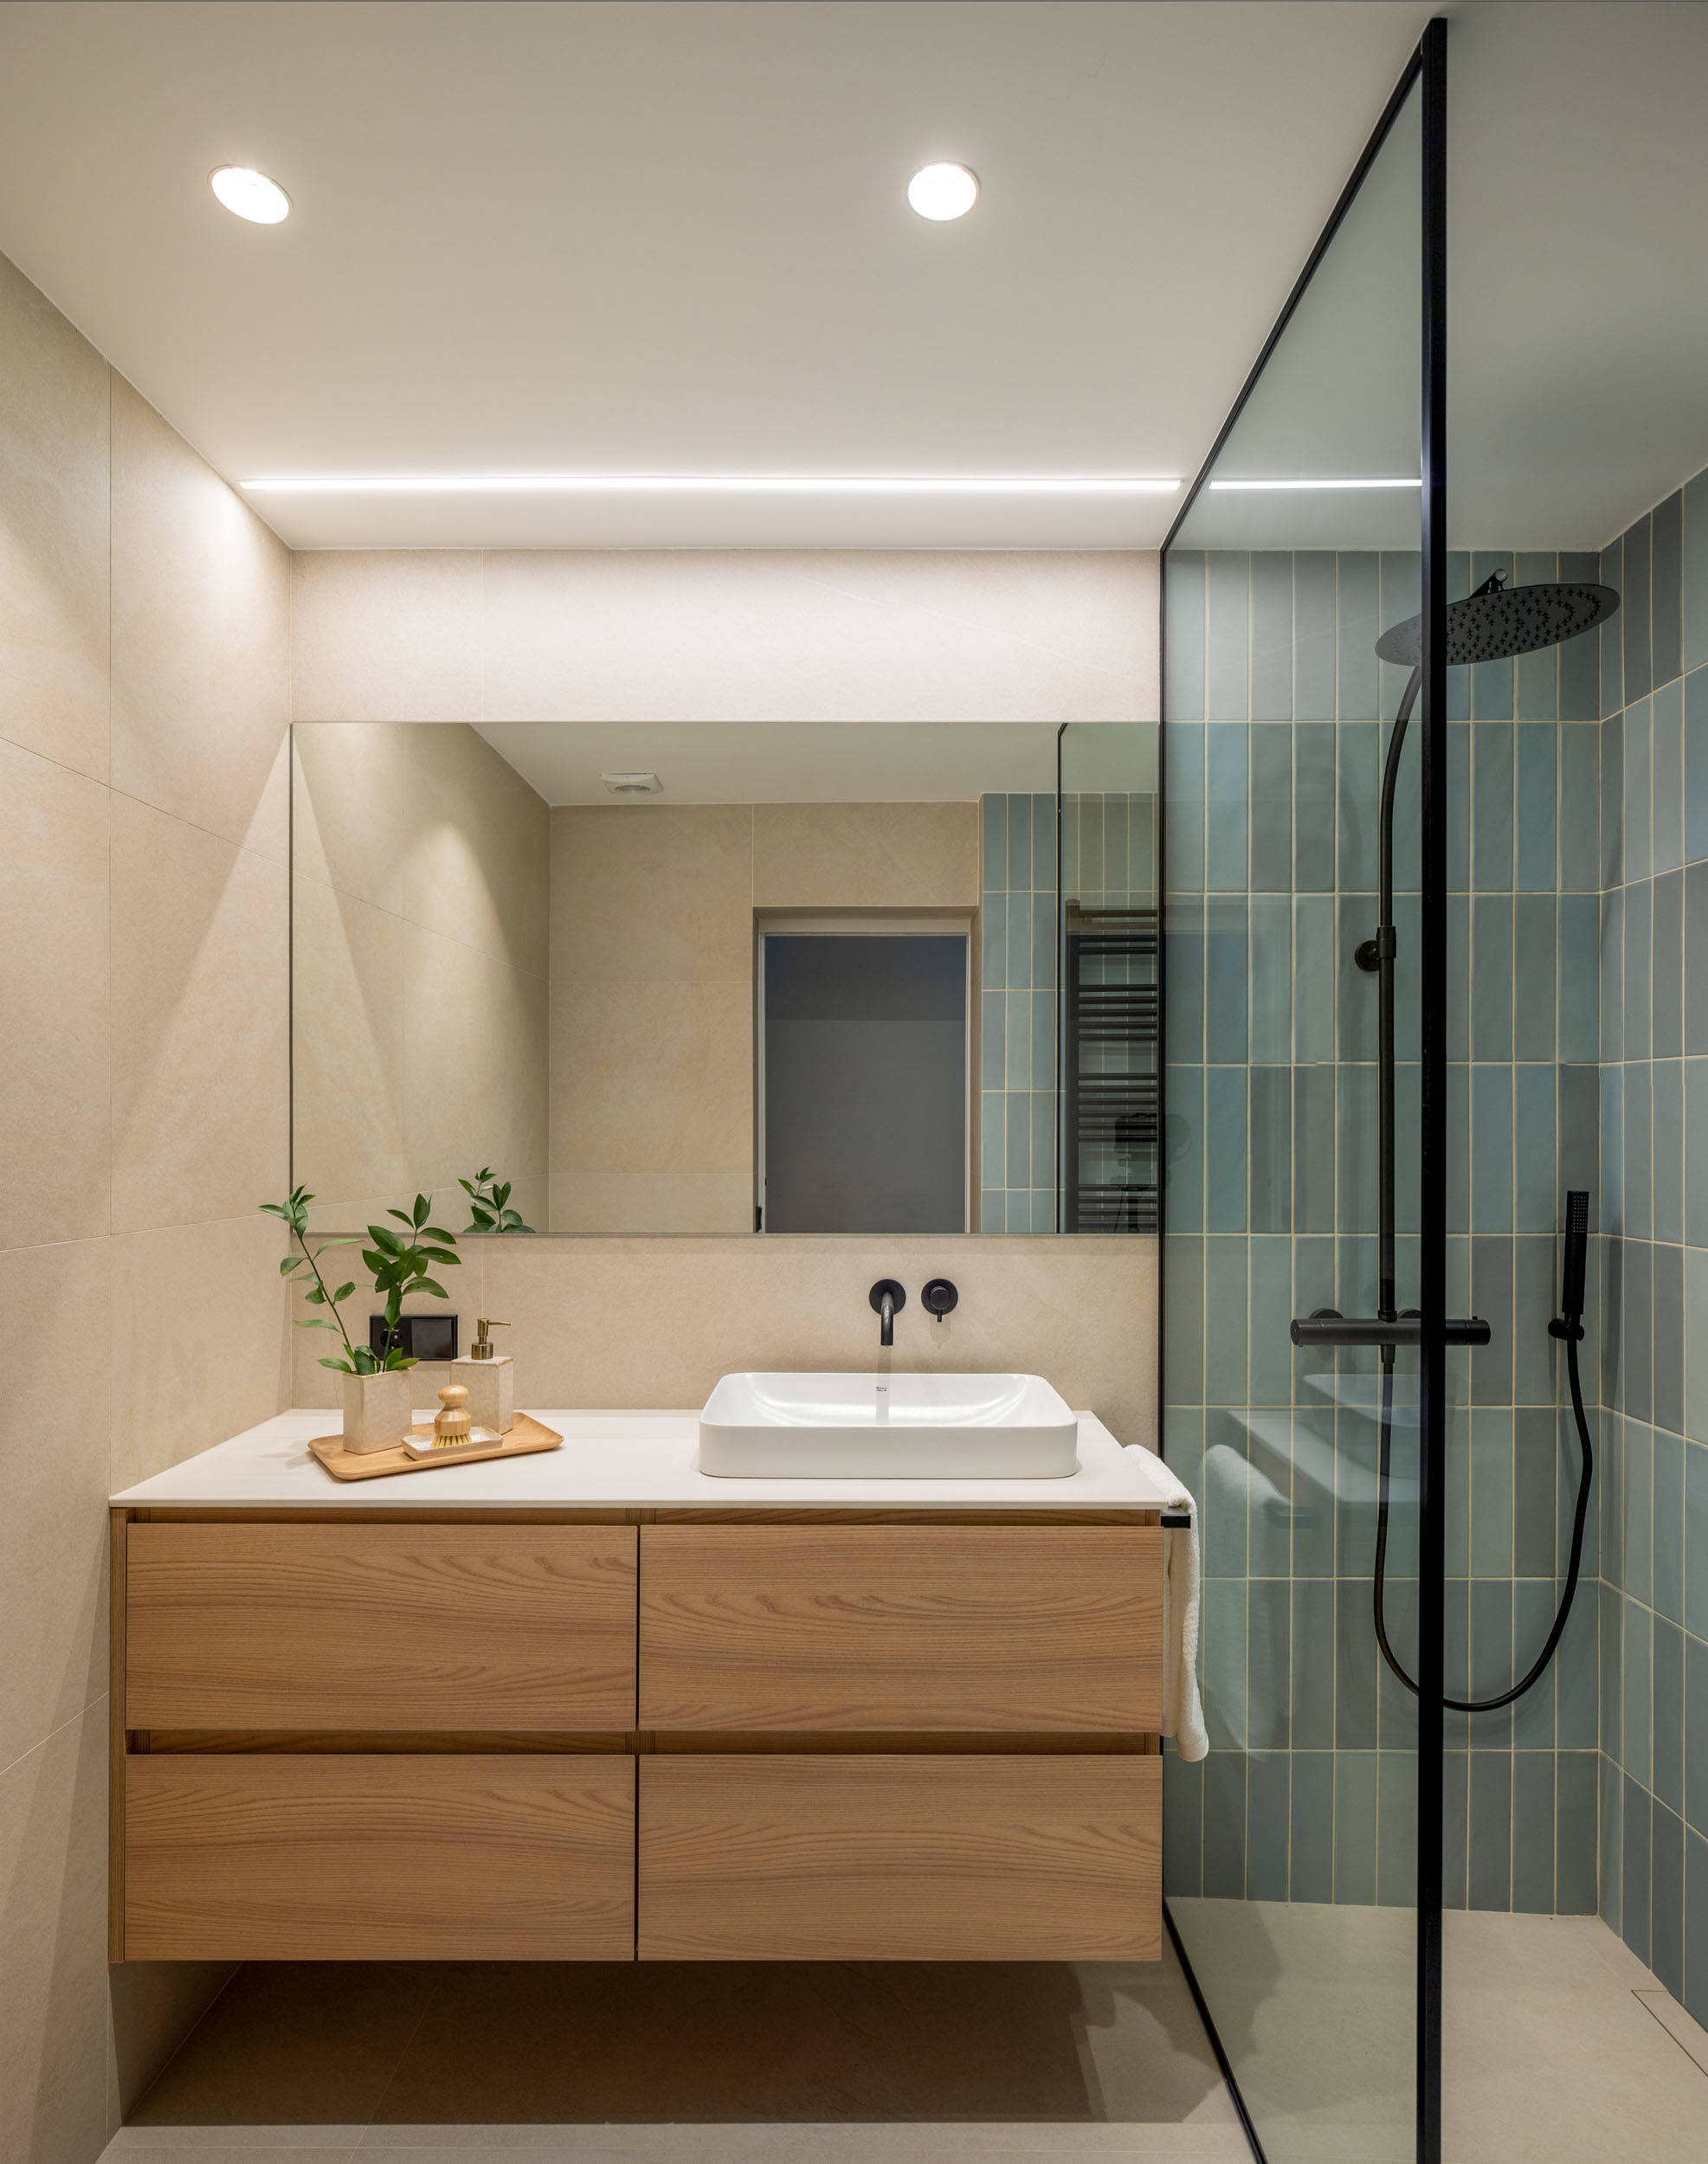 Baño del dormitorio con ducha con revestimiento de azulejos y mueble flotante.